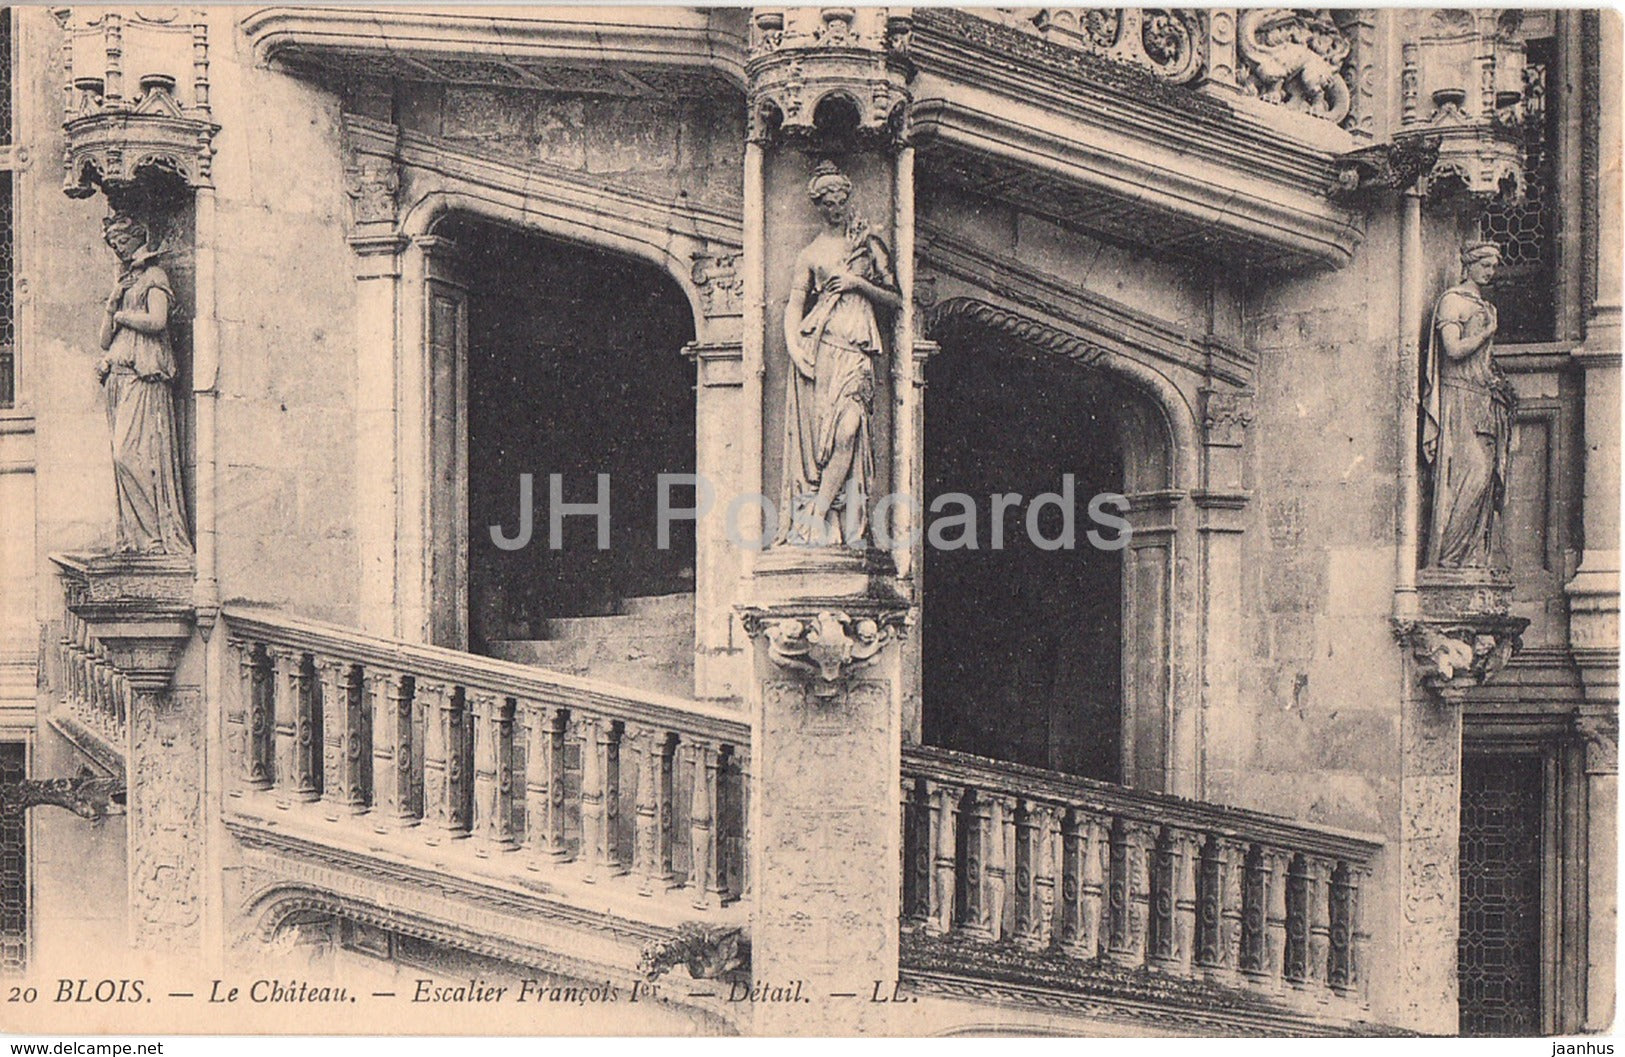 Blois - Le Chateau - Escalier Francois Ier - detail - castle - 20 - old postcard - France - unused